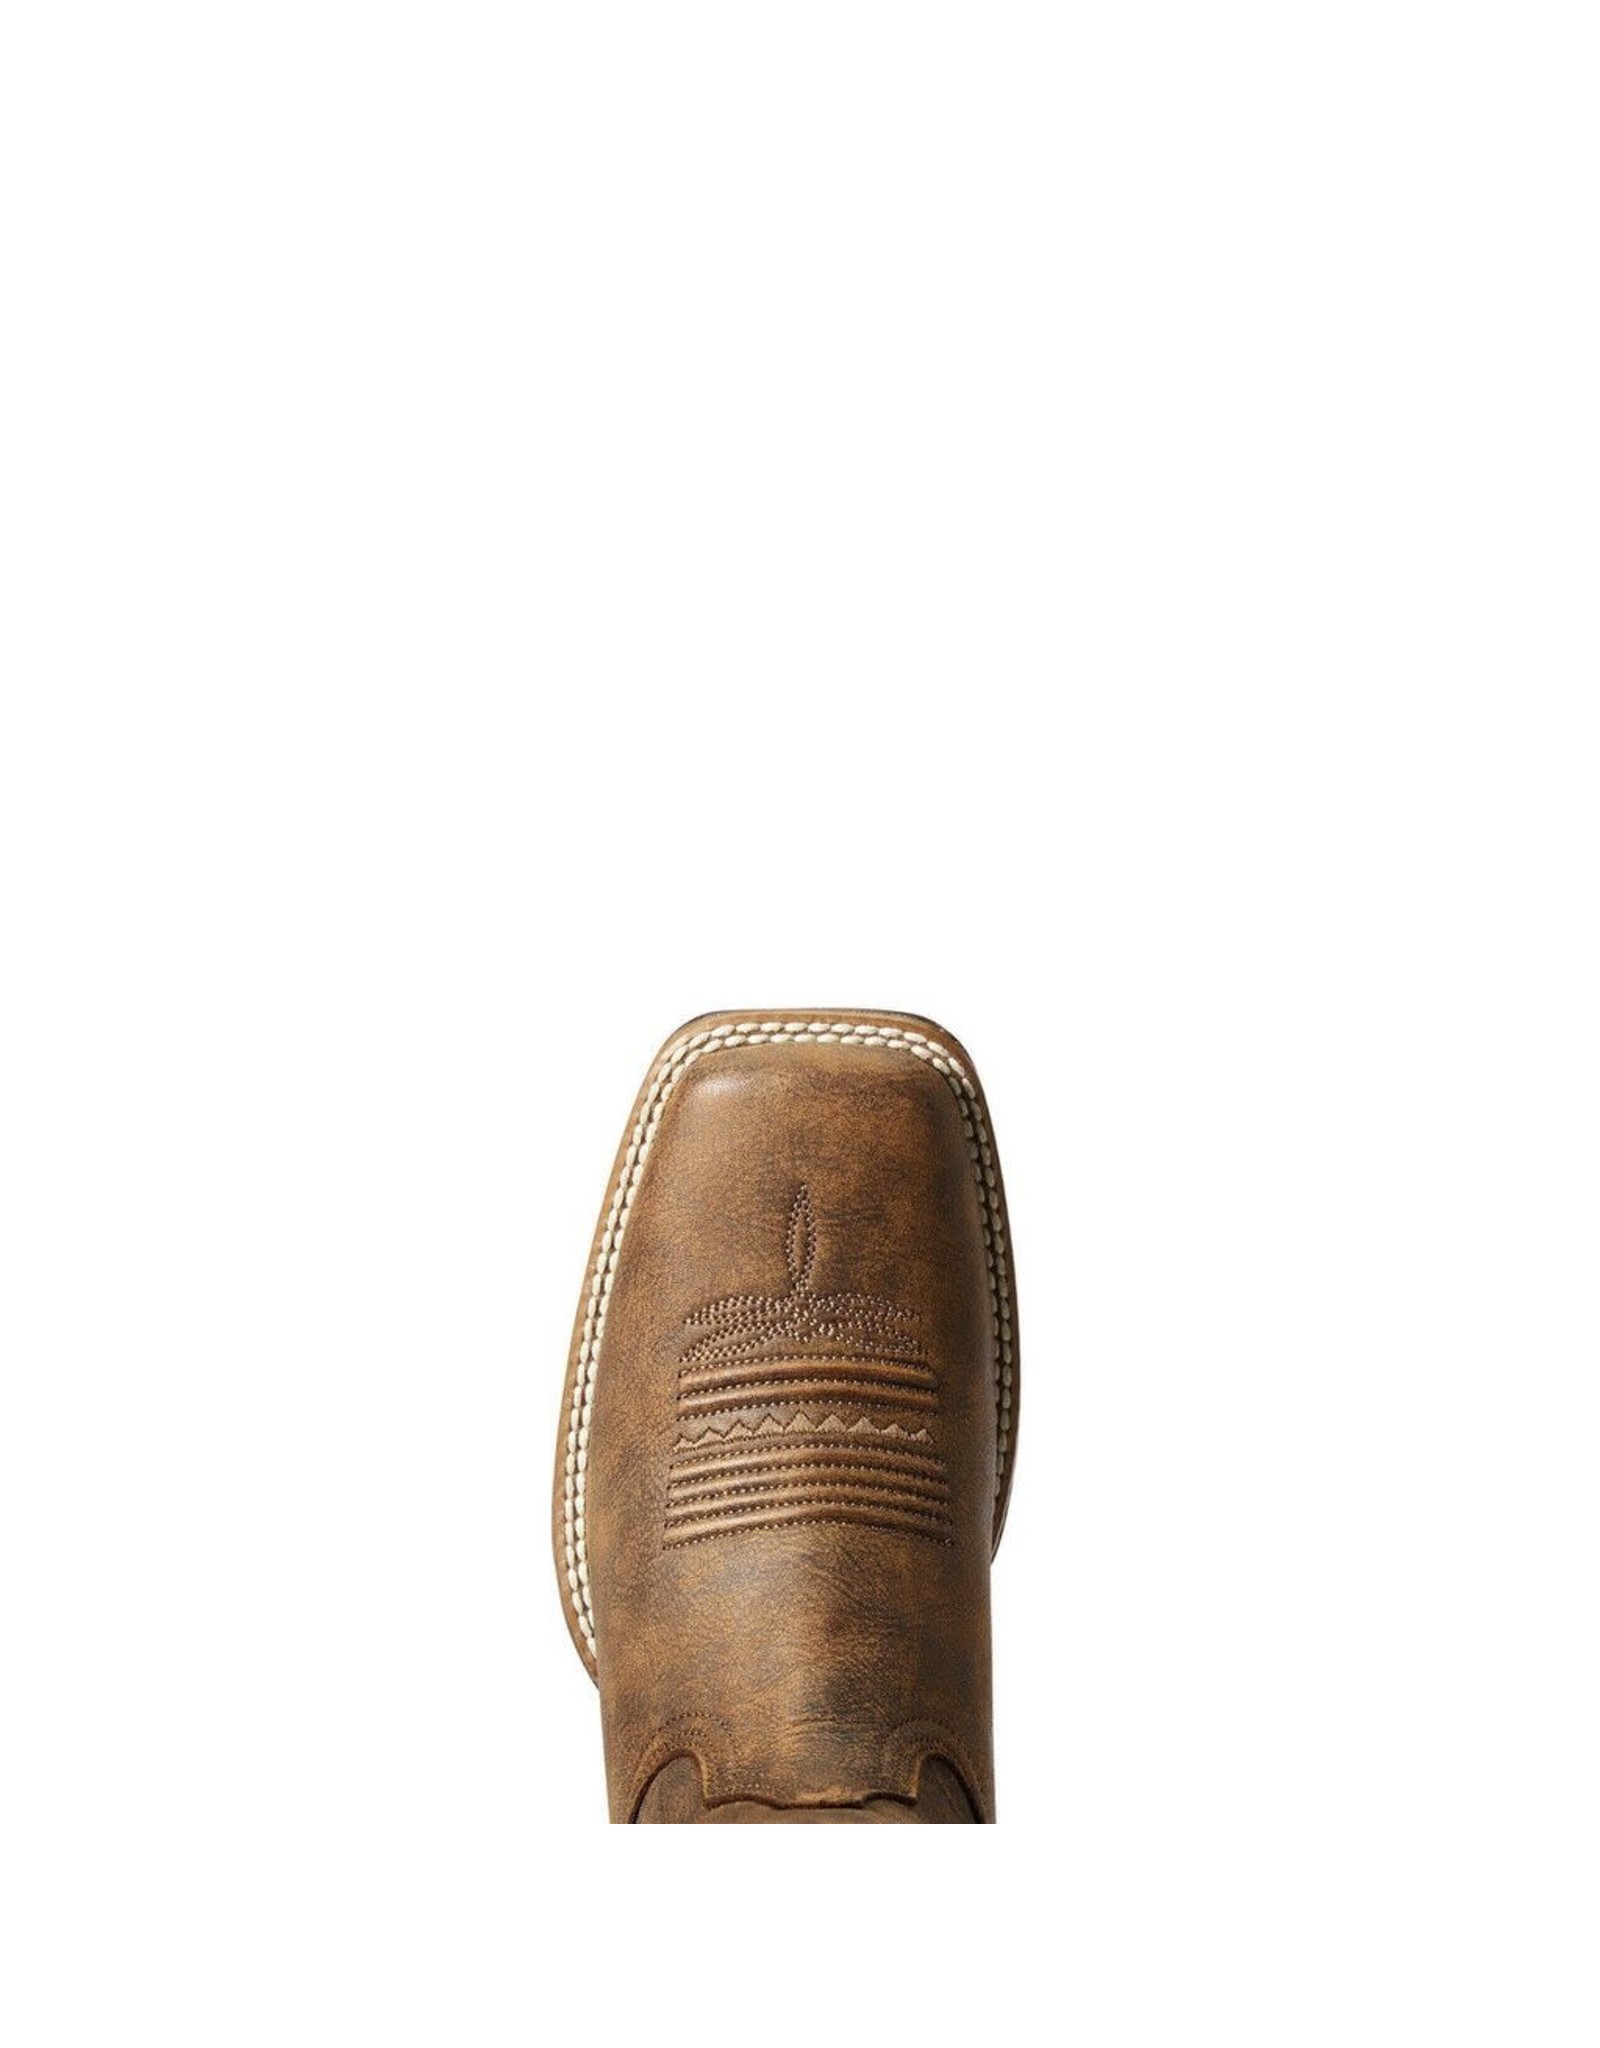 Ariat Ladies Primetime Tackroom Brown 10034163 Western Boots